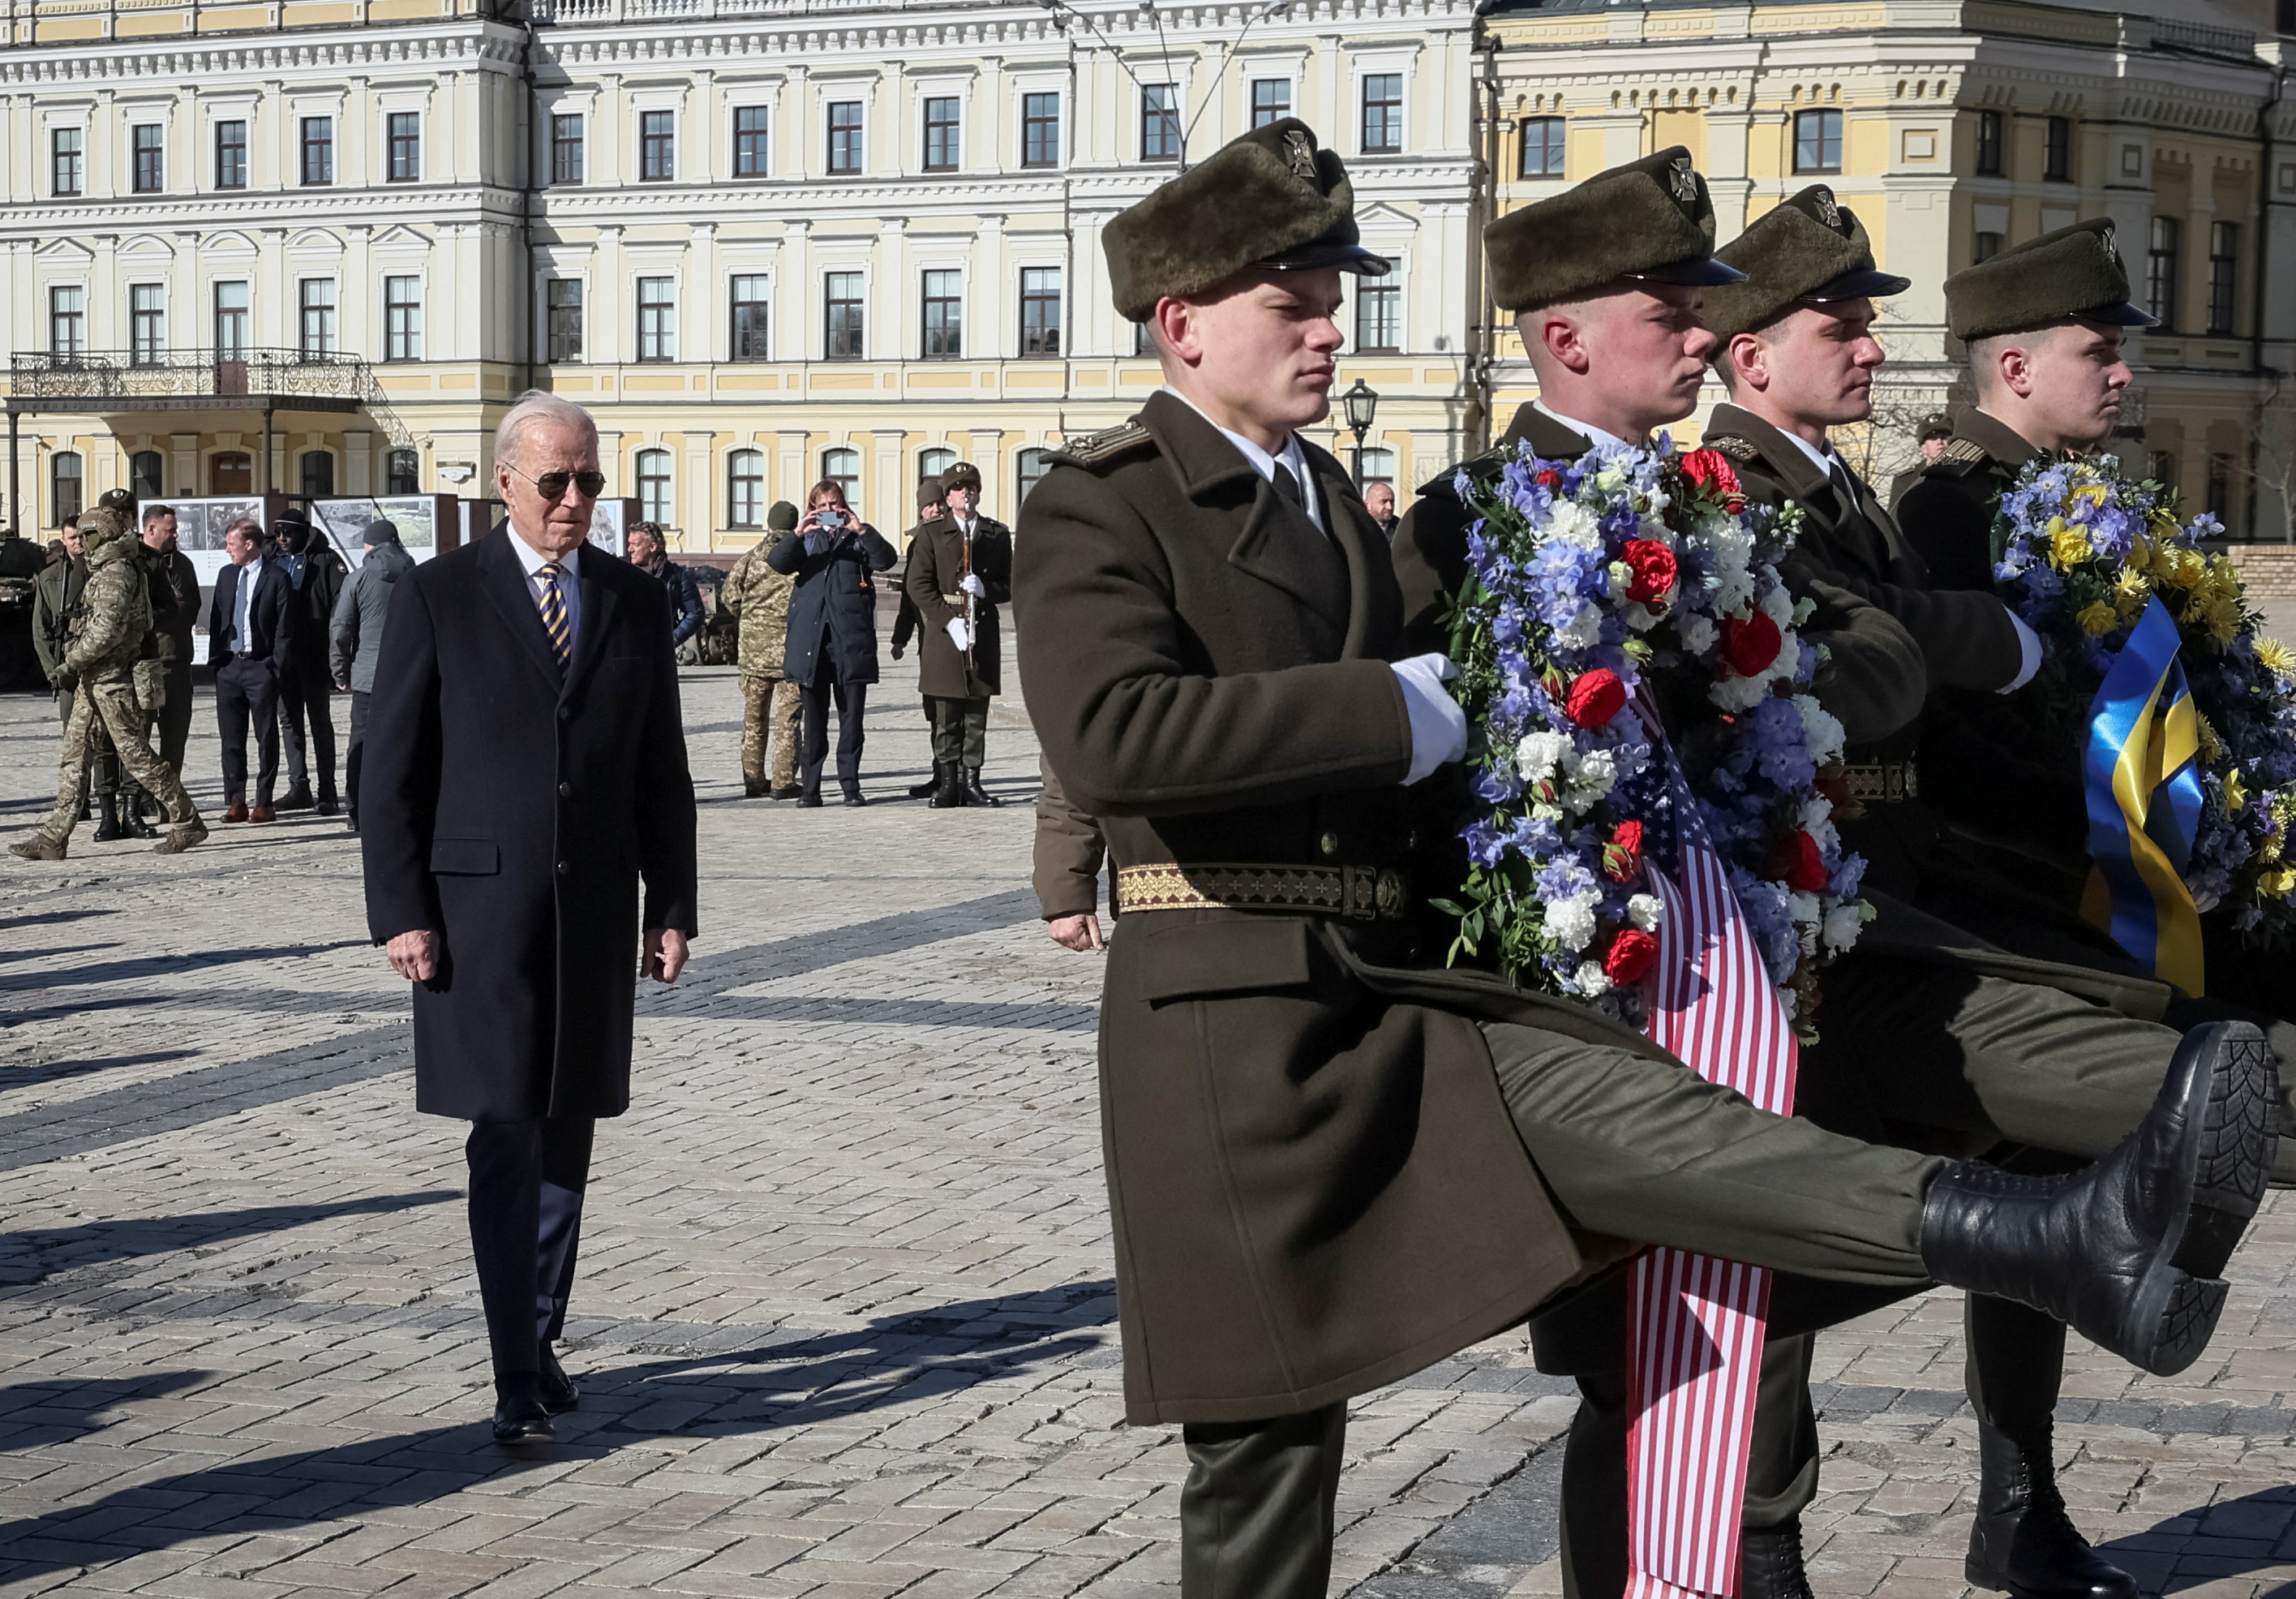  Biden y Zelensky se acercaron y juntos depositaron una corona de flores en el Muro del Recuerdo de los héroes caídos en la guerra ruso-ucraniana, mientras sonaba un saludo militar y ambos presidentes se miraban en silencio durante unos instantes.